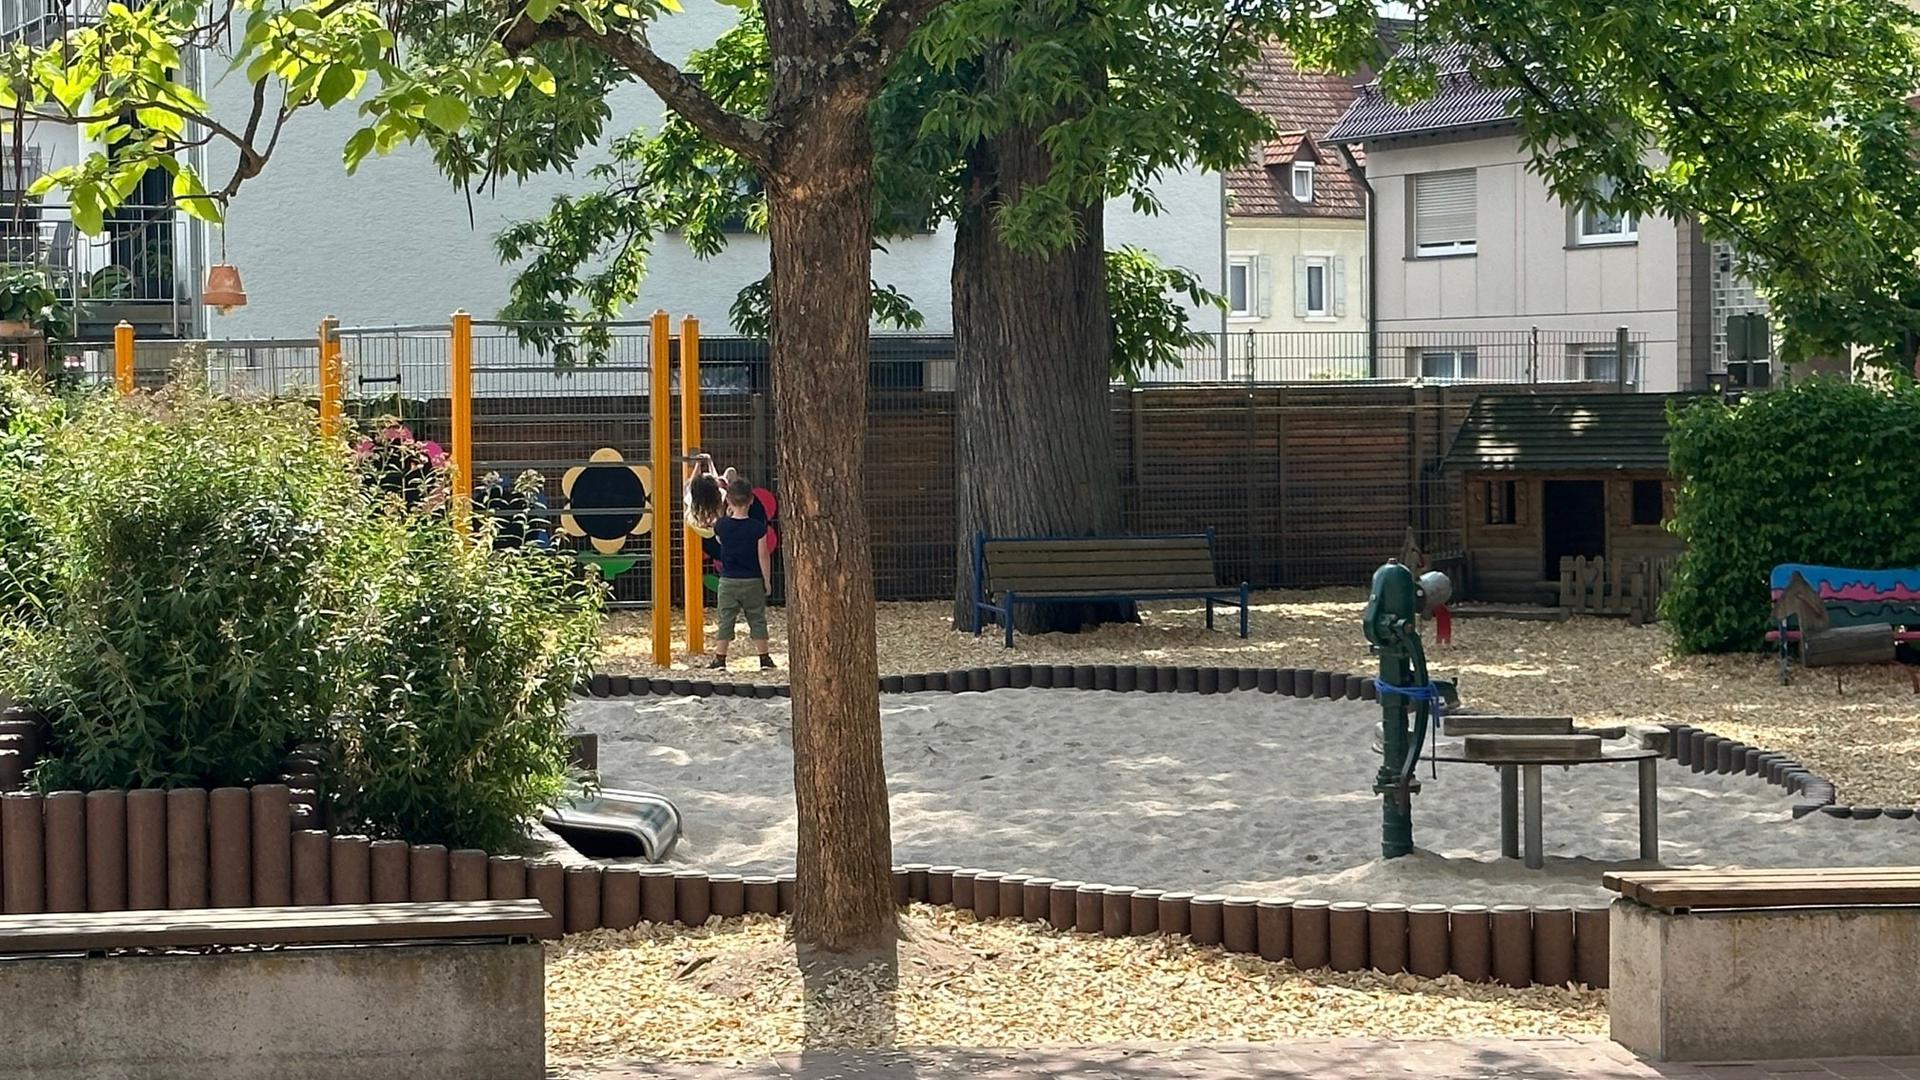 Wieder nutzbar ist die Spielfläche am Kinderhaus St. Elisabeth. Es gibt dort einige Verbesserungen für die Kinder.